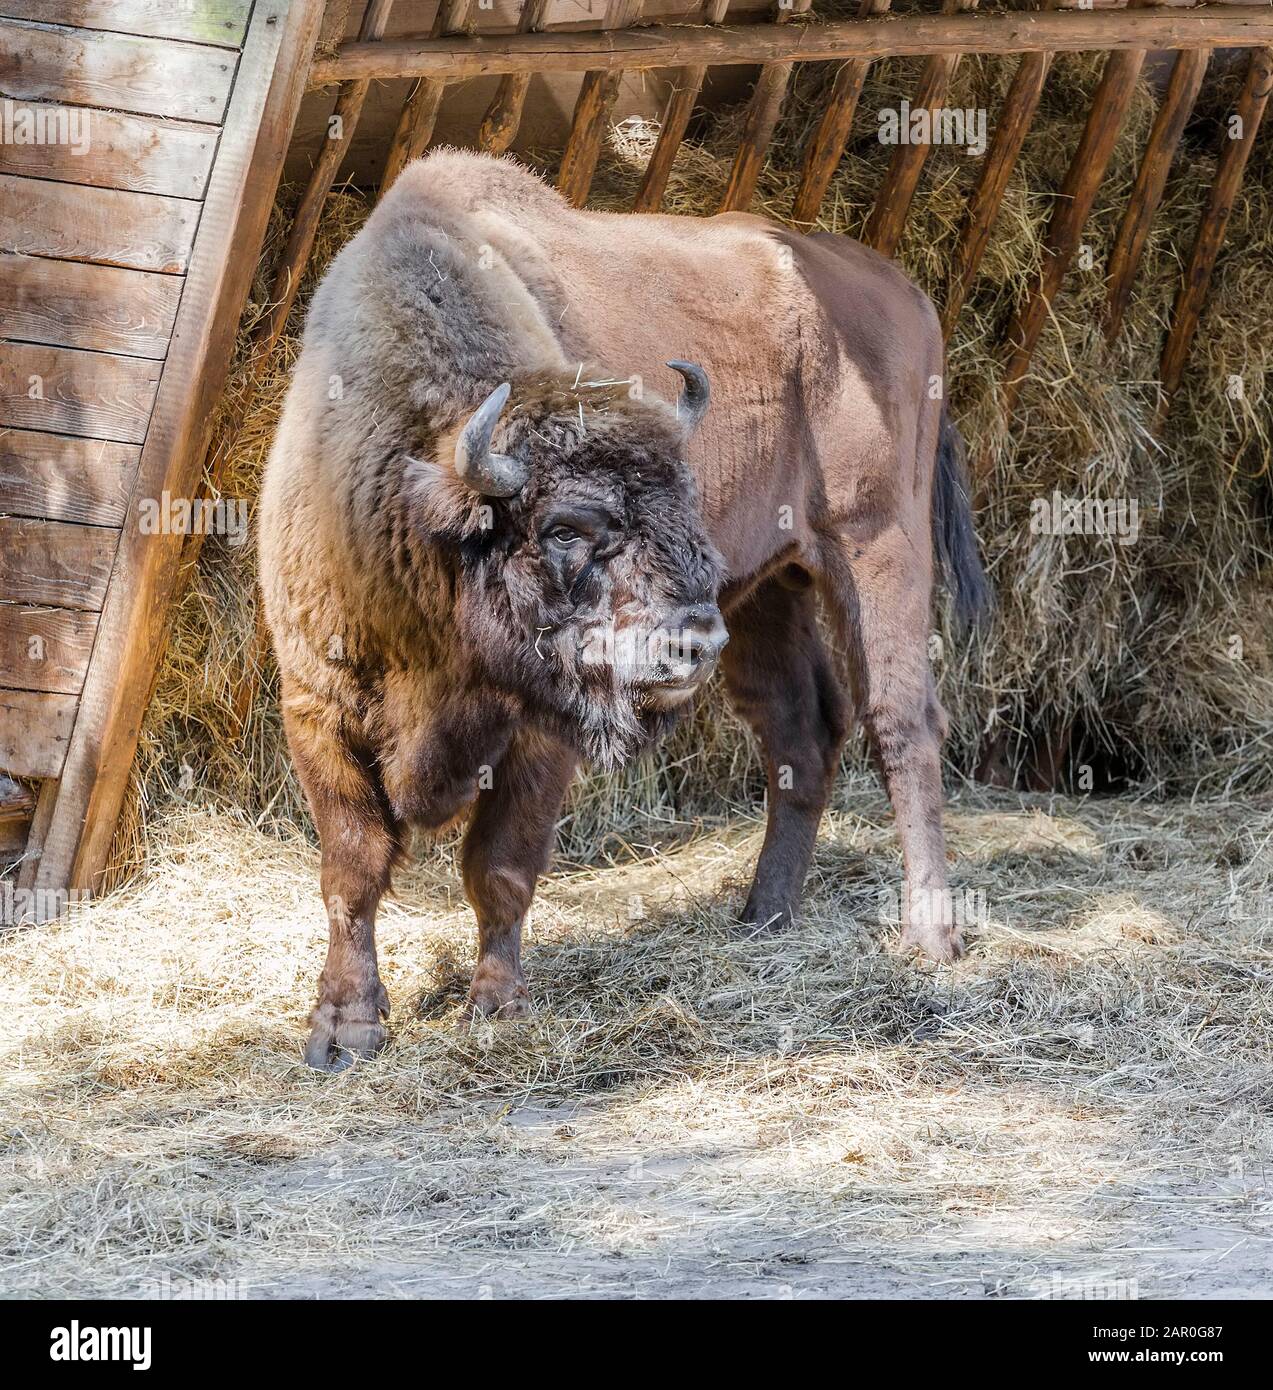 Il bisonte europeo (Bison bonasus), noto anche come bisonte o bisonte europeo, è una specie eurasiatica di bisonte Foto Stock